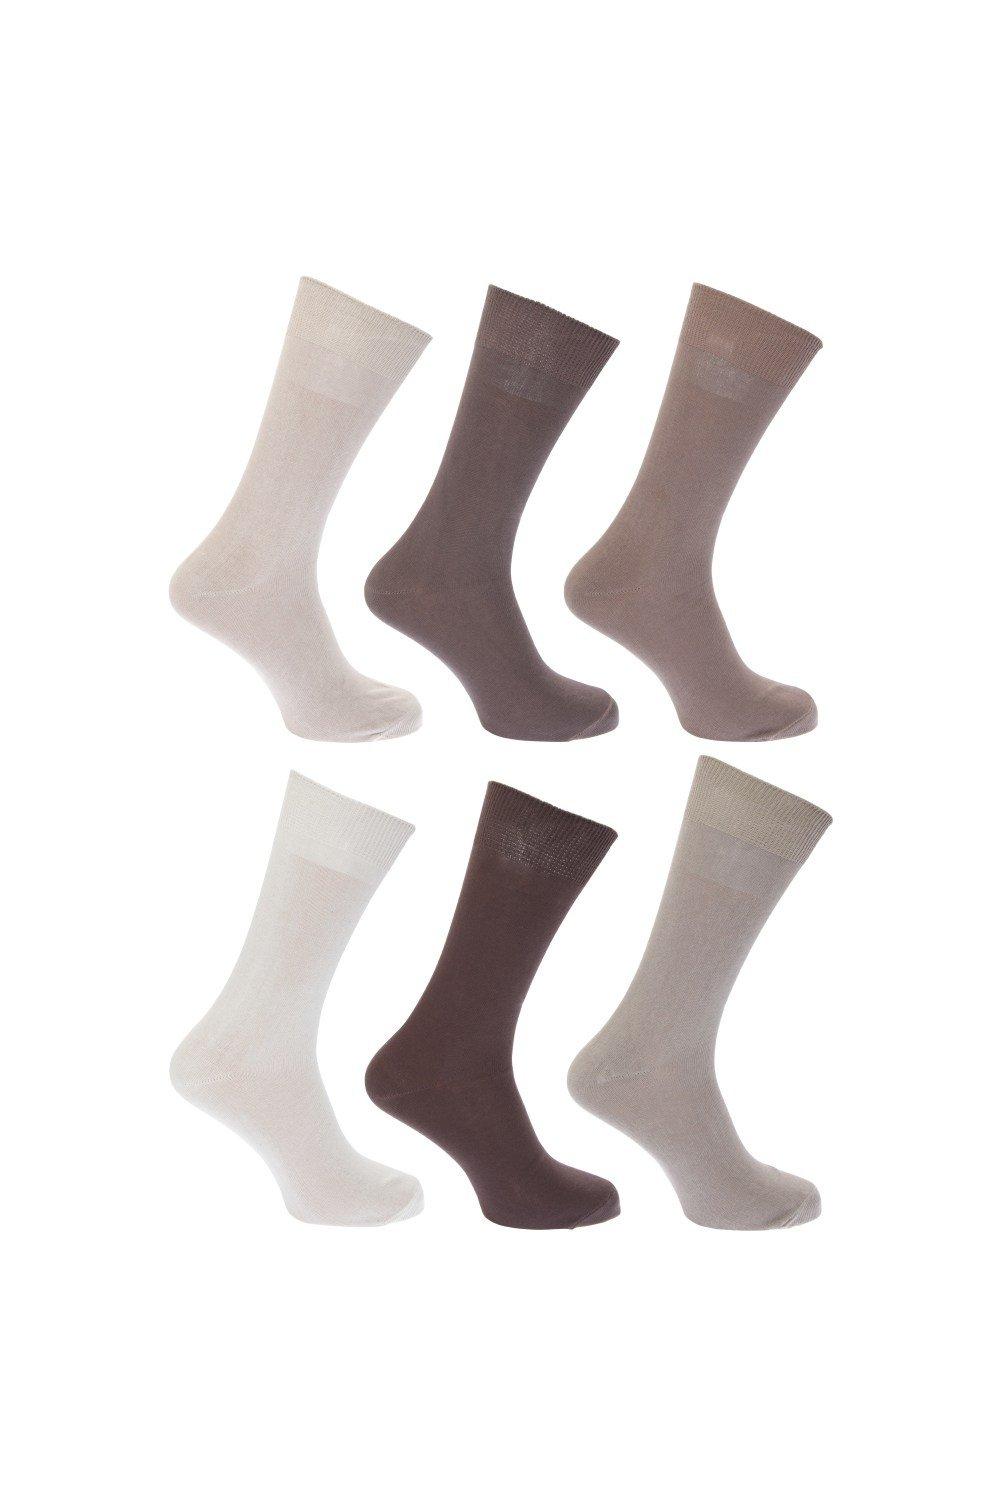 Plain 100% Cotton Socks (Pack Of 6)